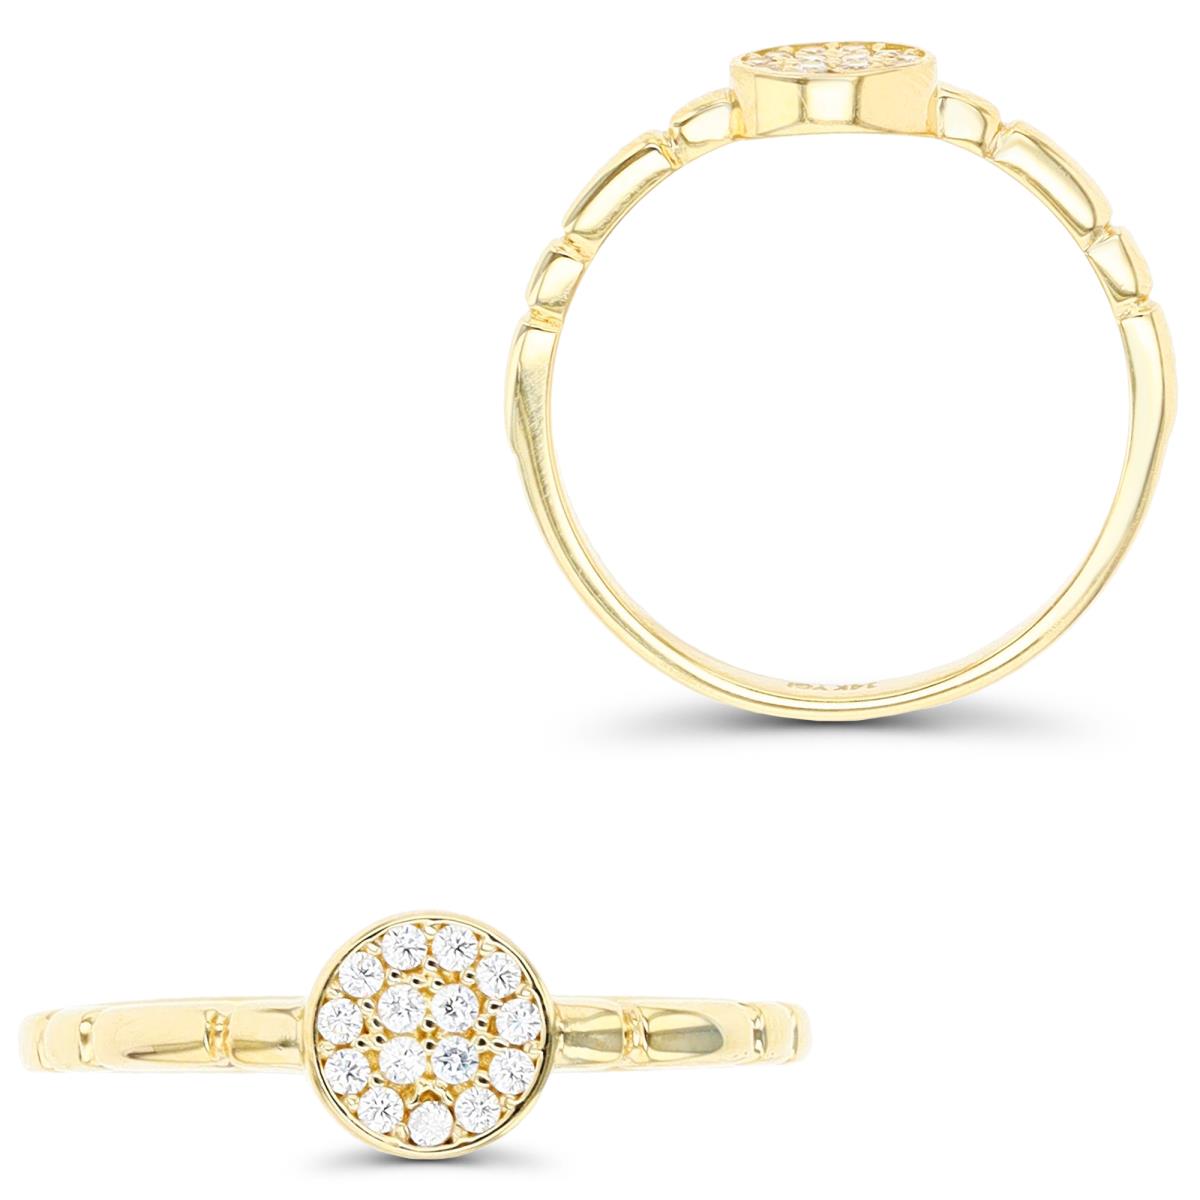 10K Yellow Gold Pave Circle Segmented Ring